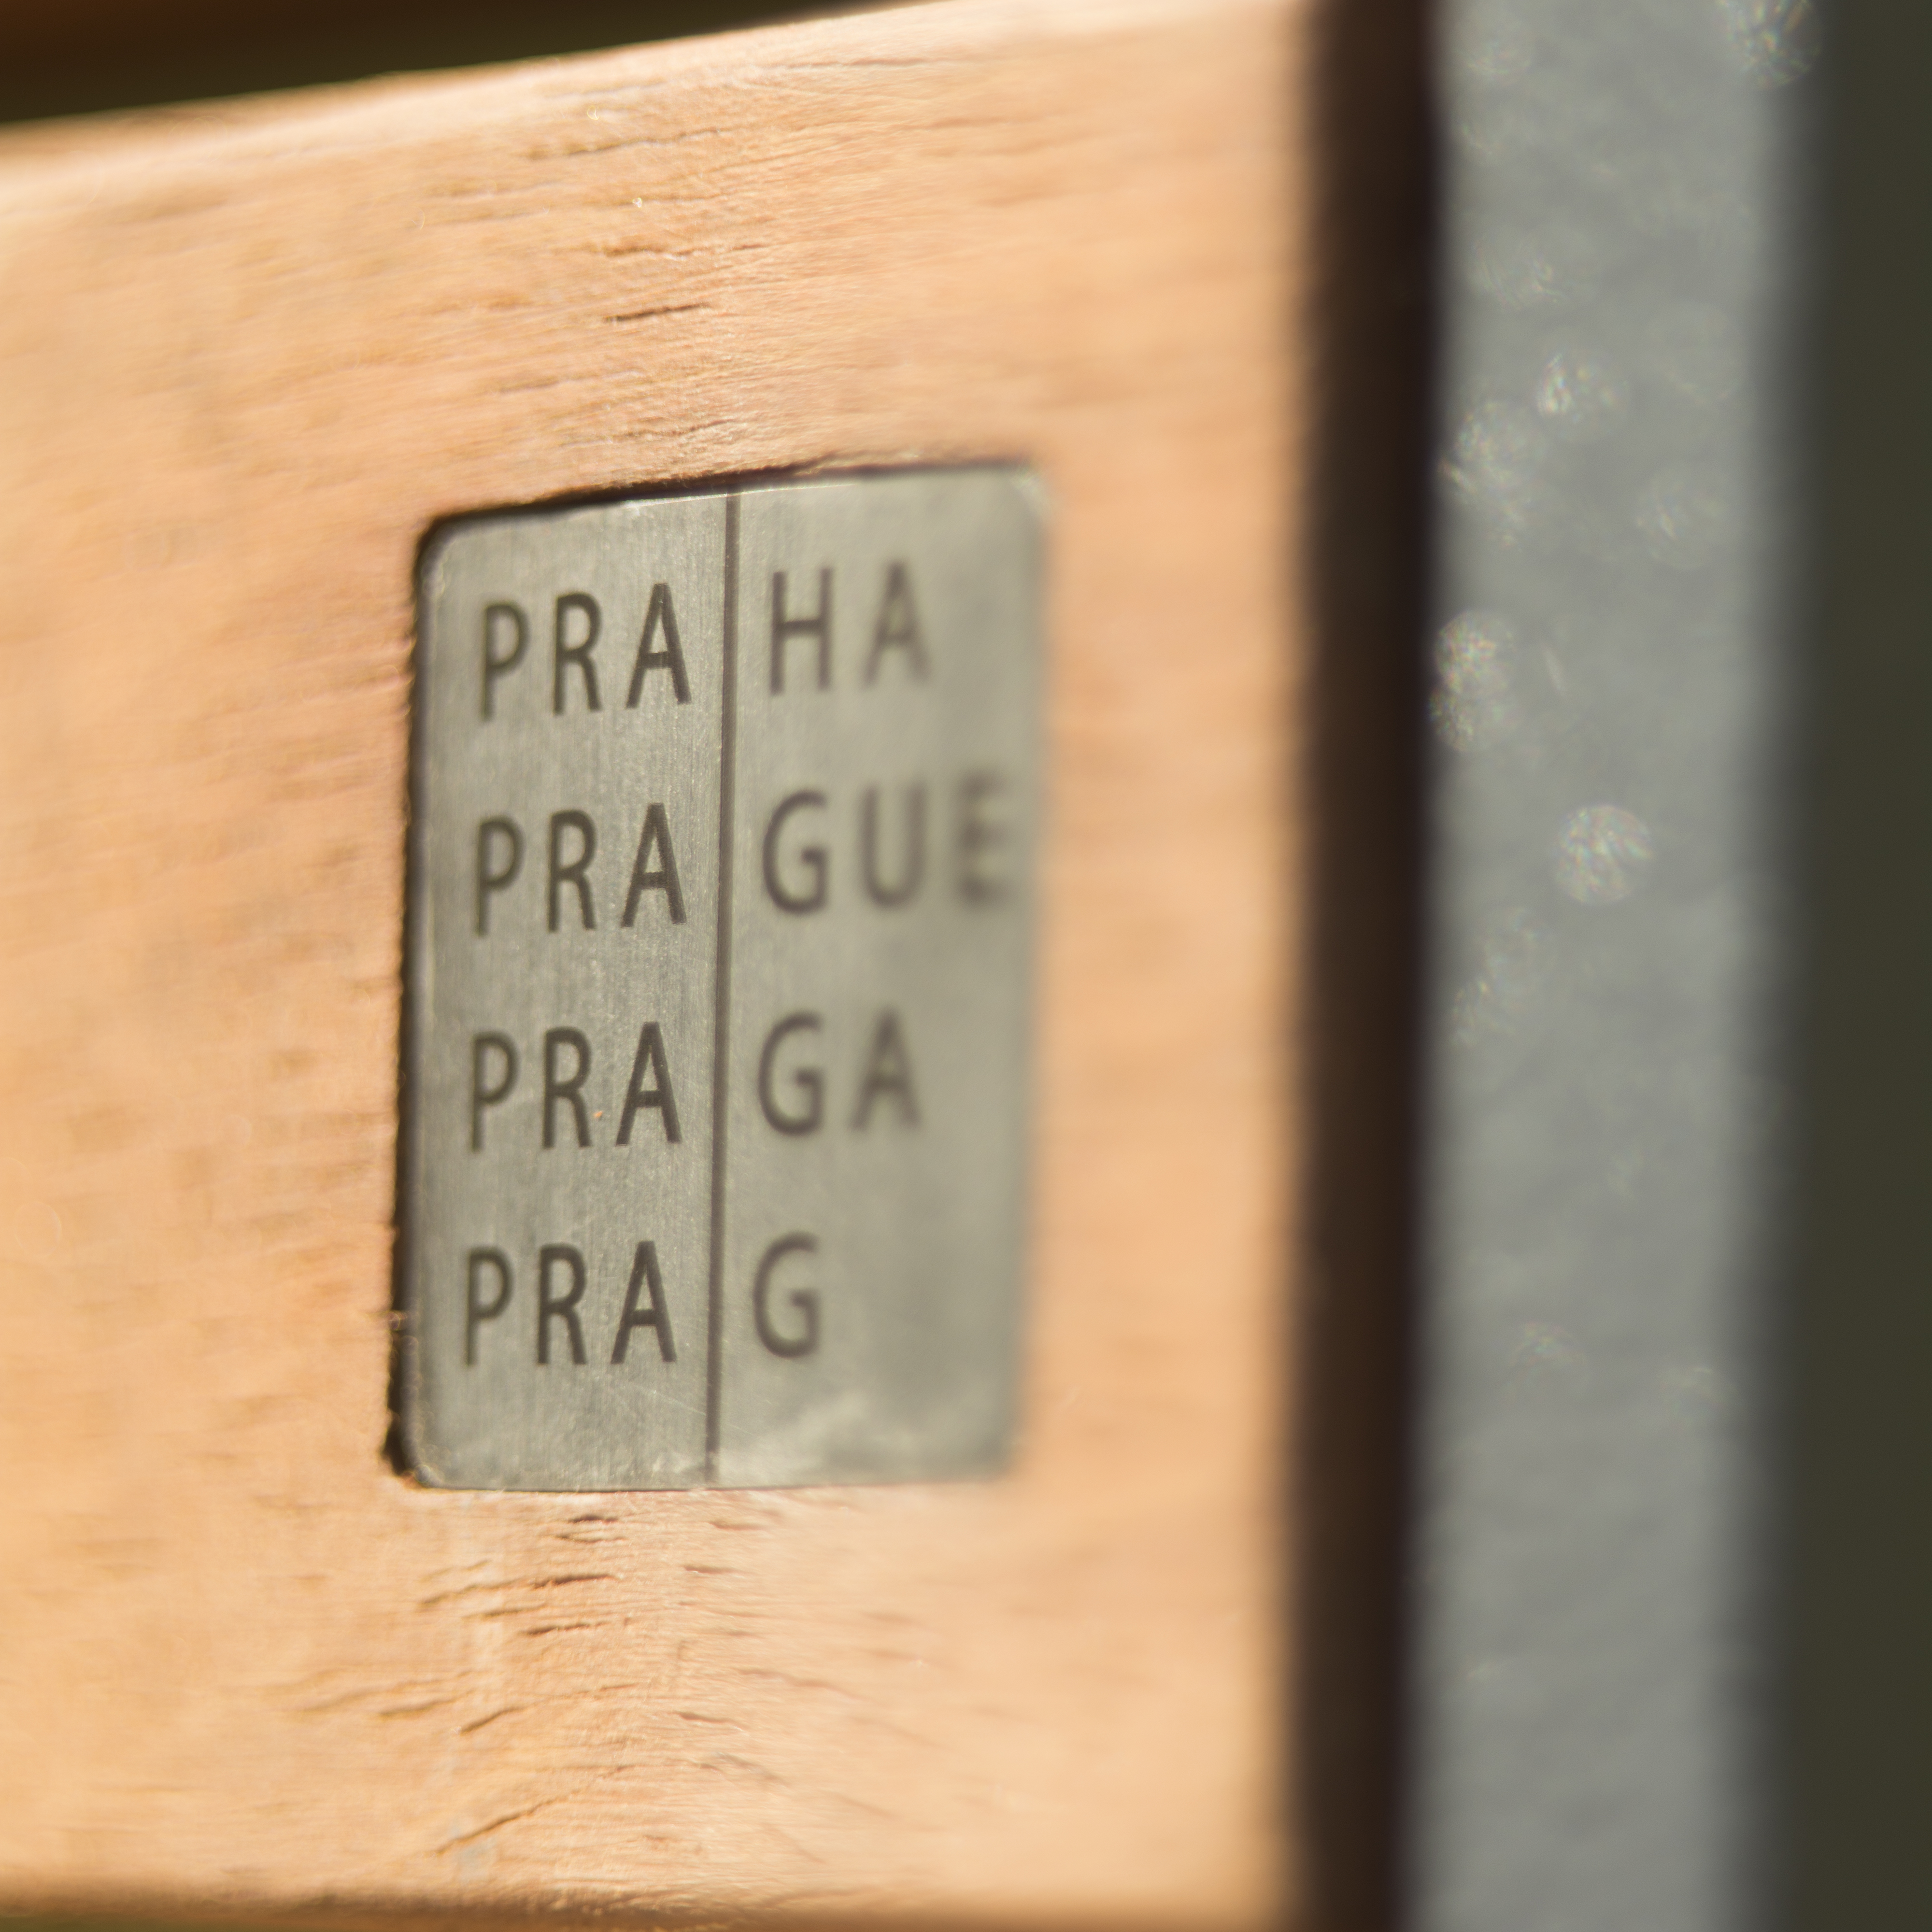 Praha vybírá nový městský mobiliář – jak budou vypadat lavičky, koše a stojany na kola?